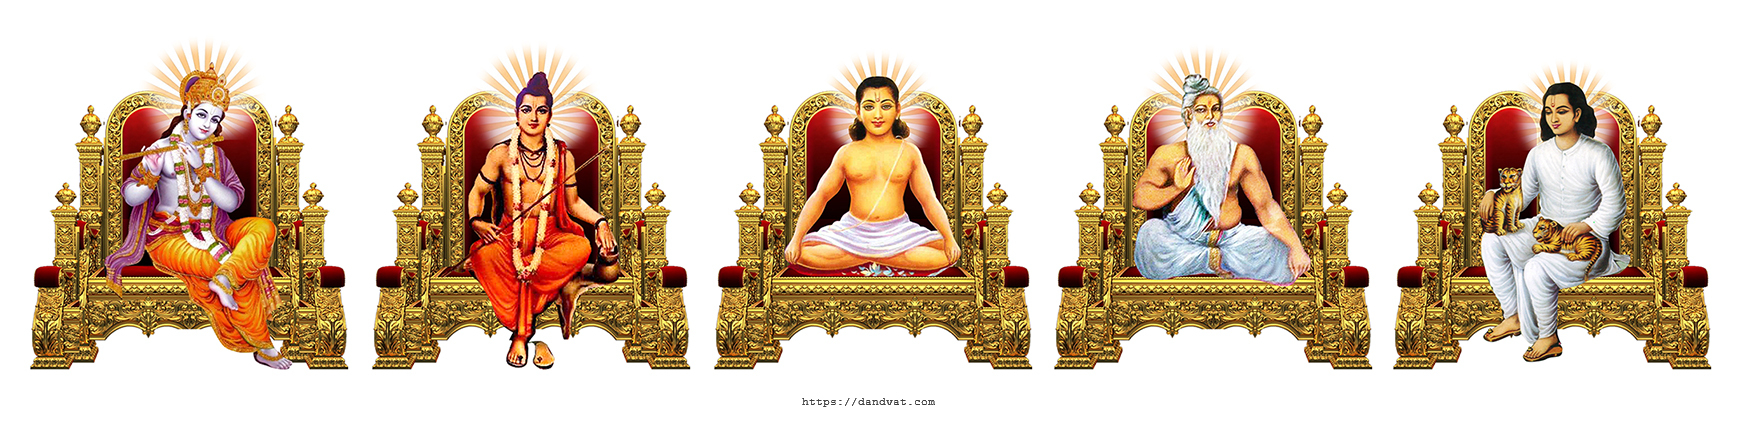 Pancha Avatars Of Mahanubhava Pantha | Dandvat